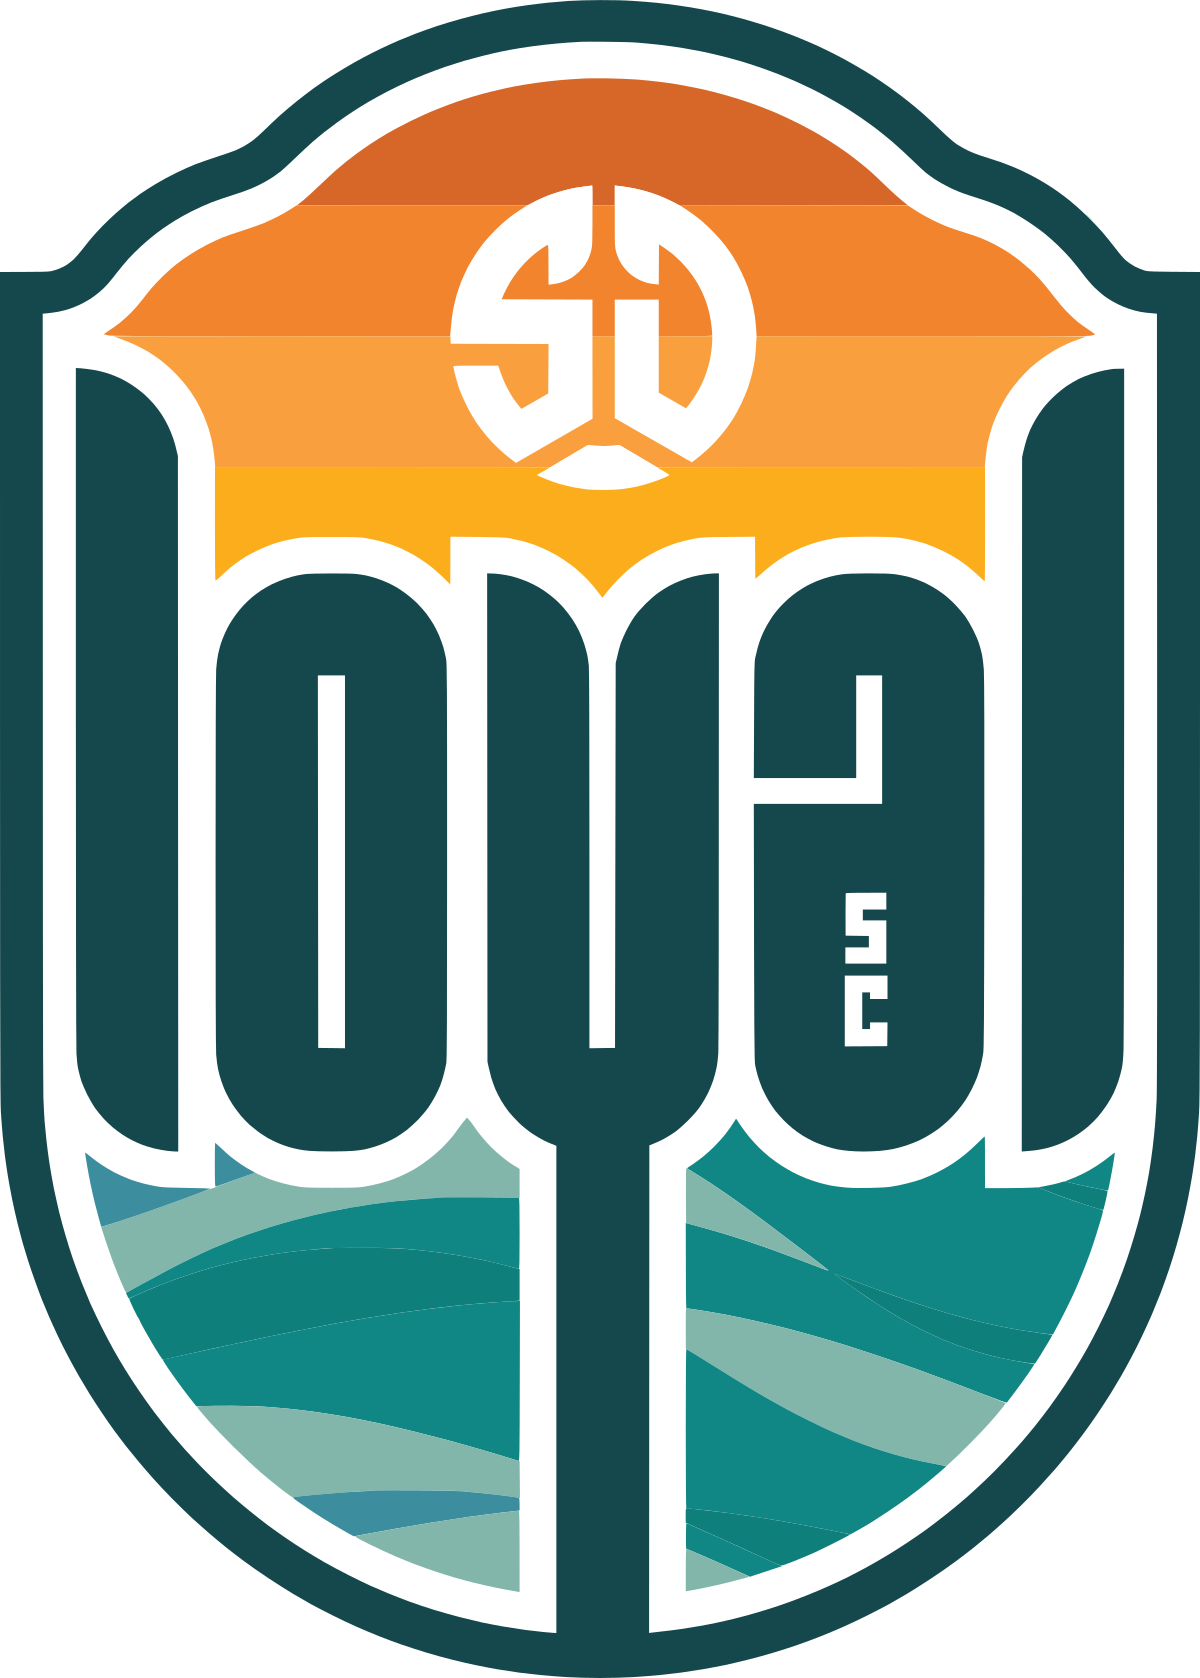 San Diego Loyal Soccer Club logo